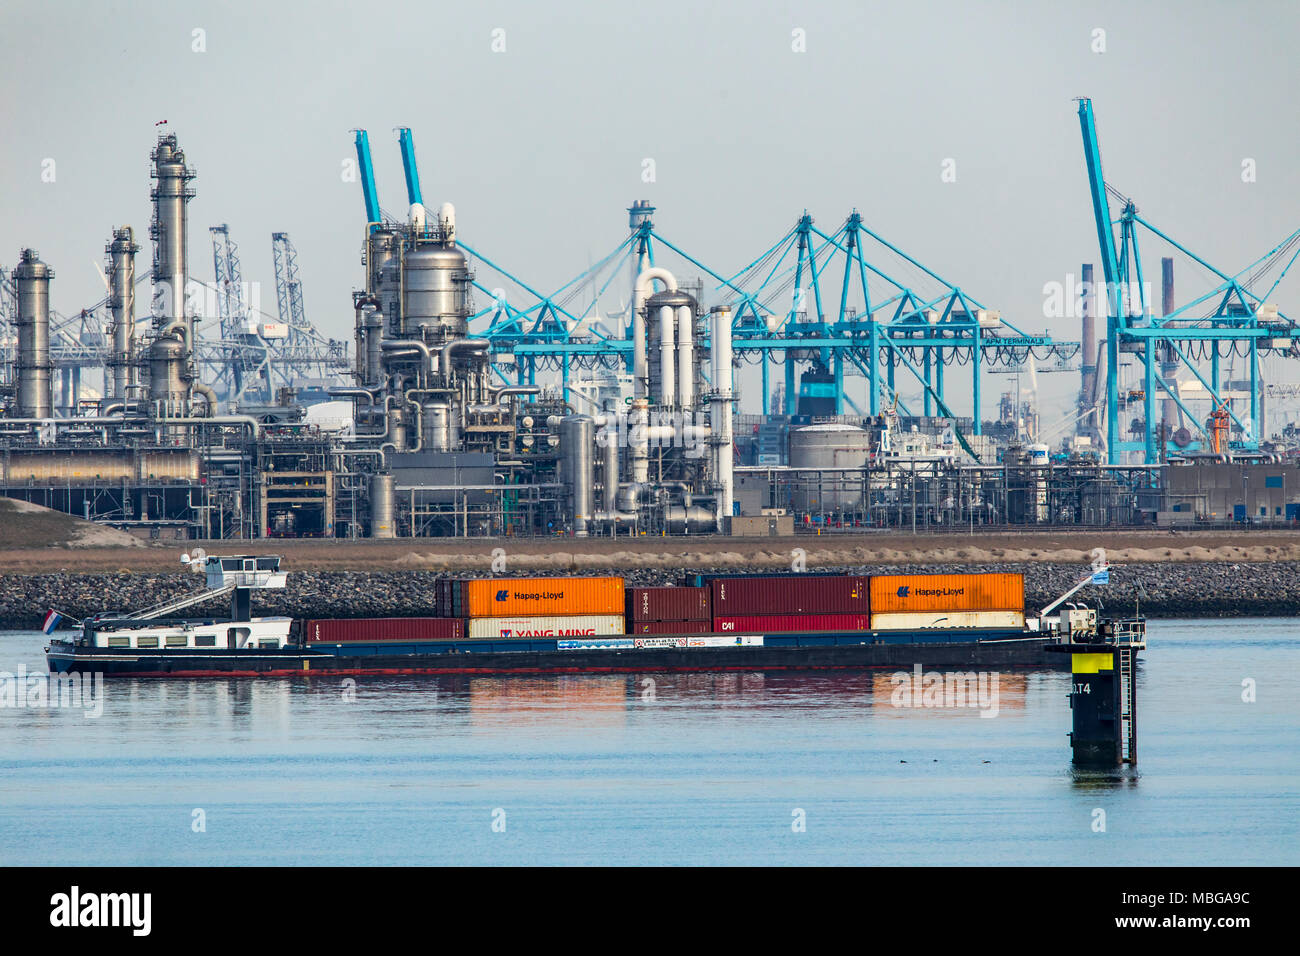 Le port maritime de Rotterdam, Pays-Bas, Maasvlakte 2 de port de haute mer, sur un terrain paysagé artificiellement au large de la côte d'origine, Raffinerie BP Rotterdam B. Banque D'Images